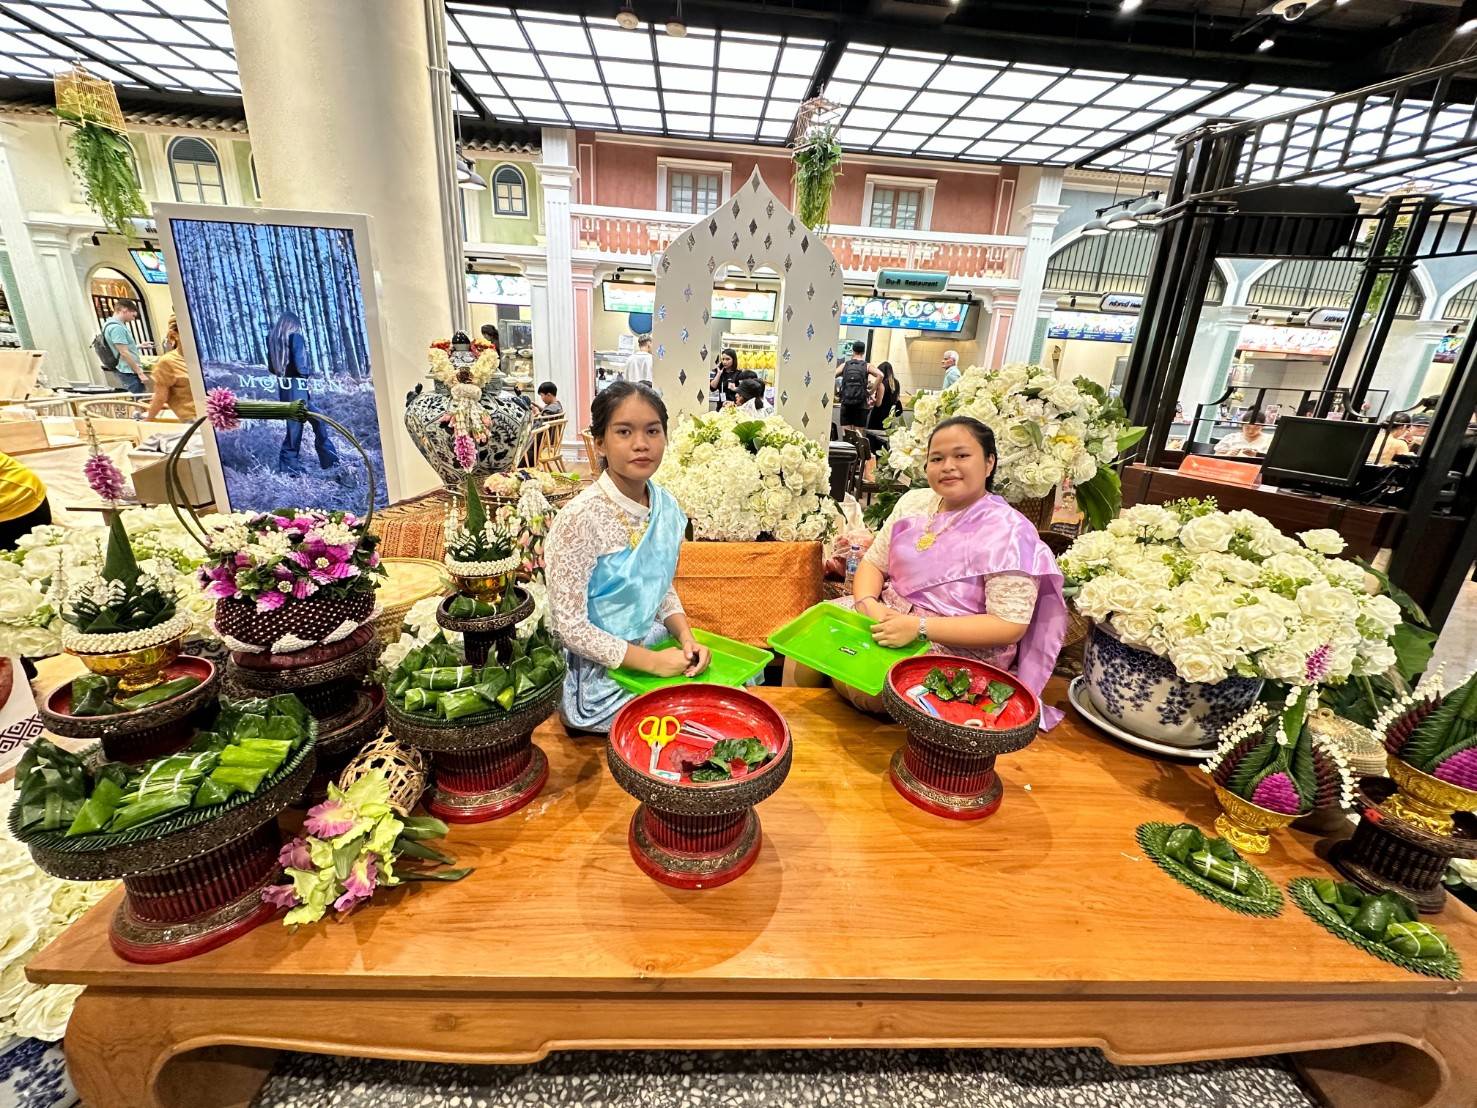 วันที่ 1-14 เมษายน 2567 แผนกวิชาคหกรรศาสตร์ ร่วมจัดแสดงผลงานการประดิษฐ์งานใบตอง งานมาลัยดอกไม้สด และการแกะสลักผัก ผลไม้เพื่อเป็นการส่งเสริมศิลปะวัฒนธรรมของไทย ในงาน THAI HANDICRAFTS ณ ห้างสรรพสินค้าเซ็นทรัล ฟรอเรสต้า ภูเก็ต